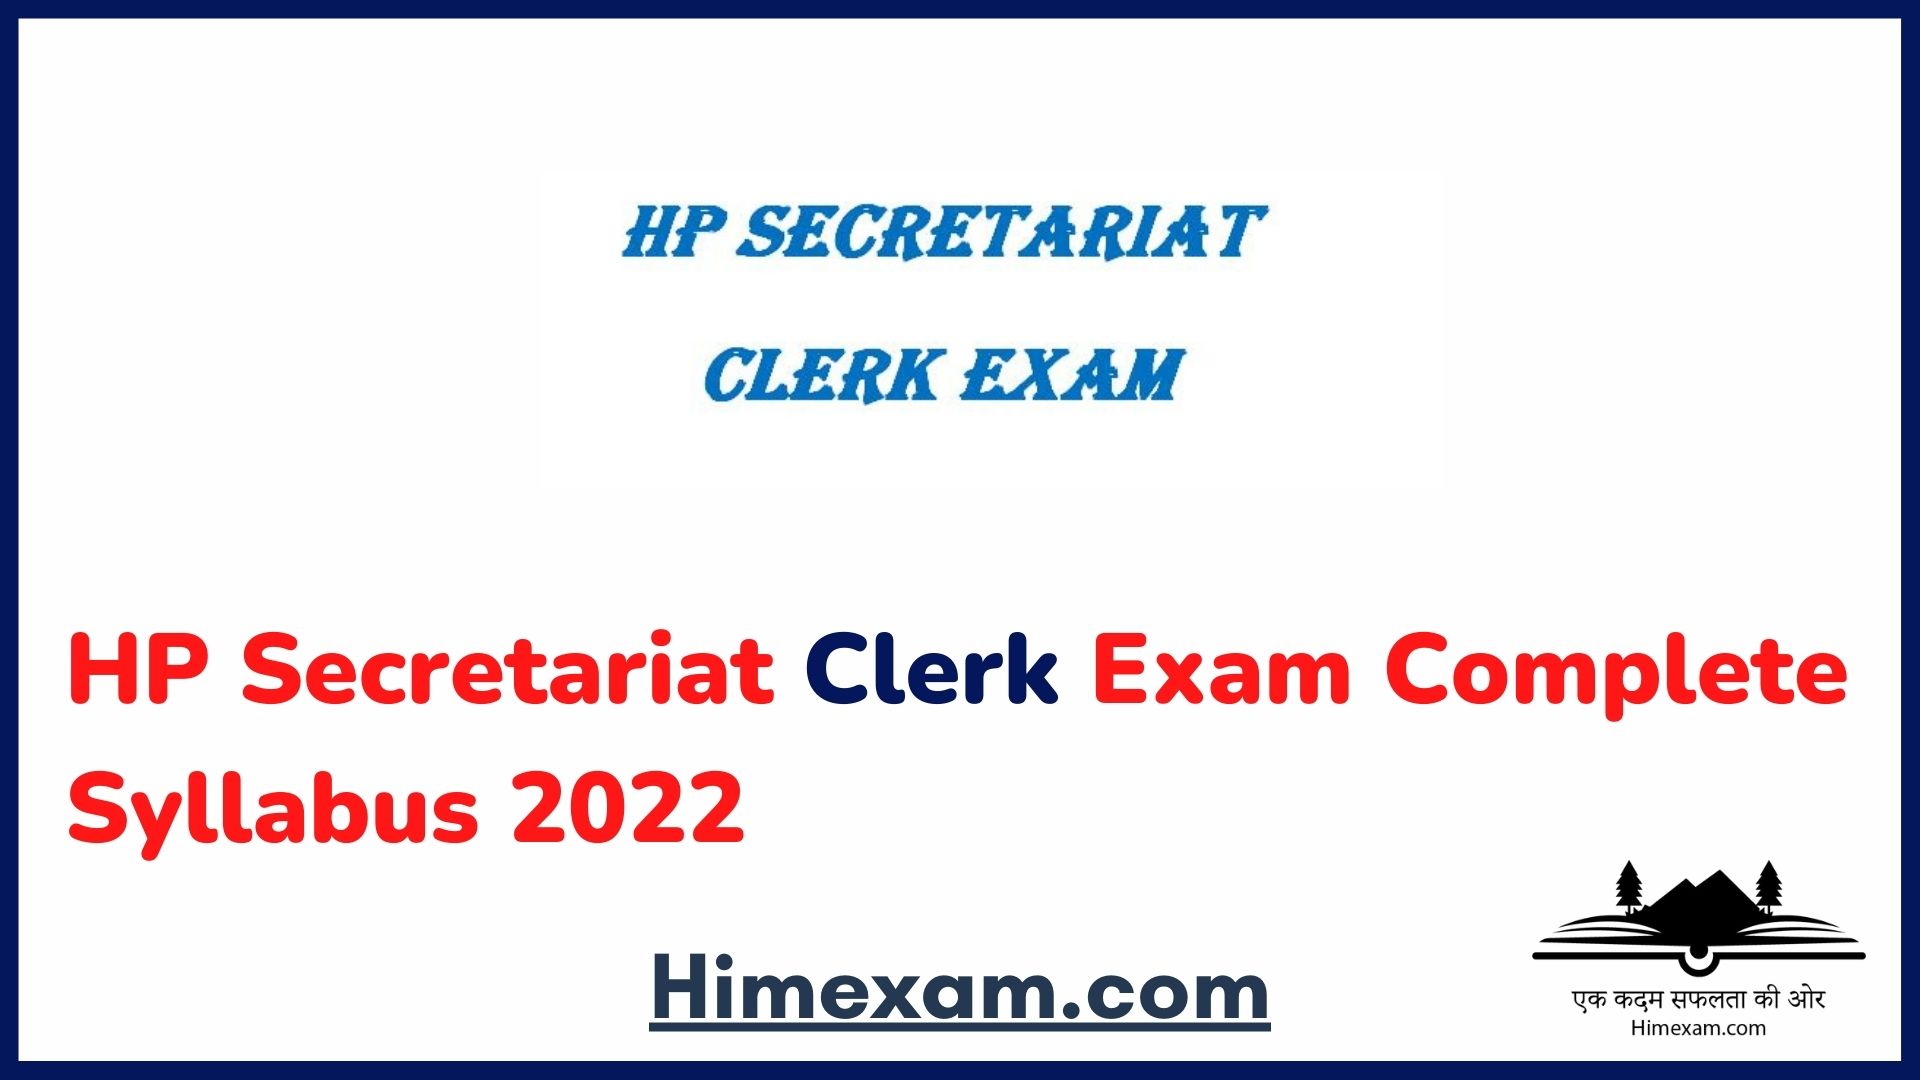 HP Secretariat Clerk Exam Complete Syllabus 2022